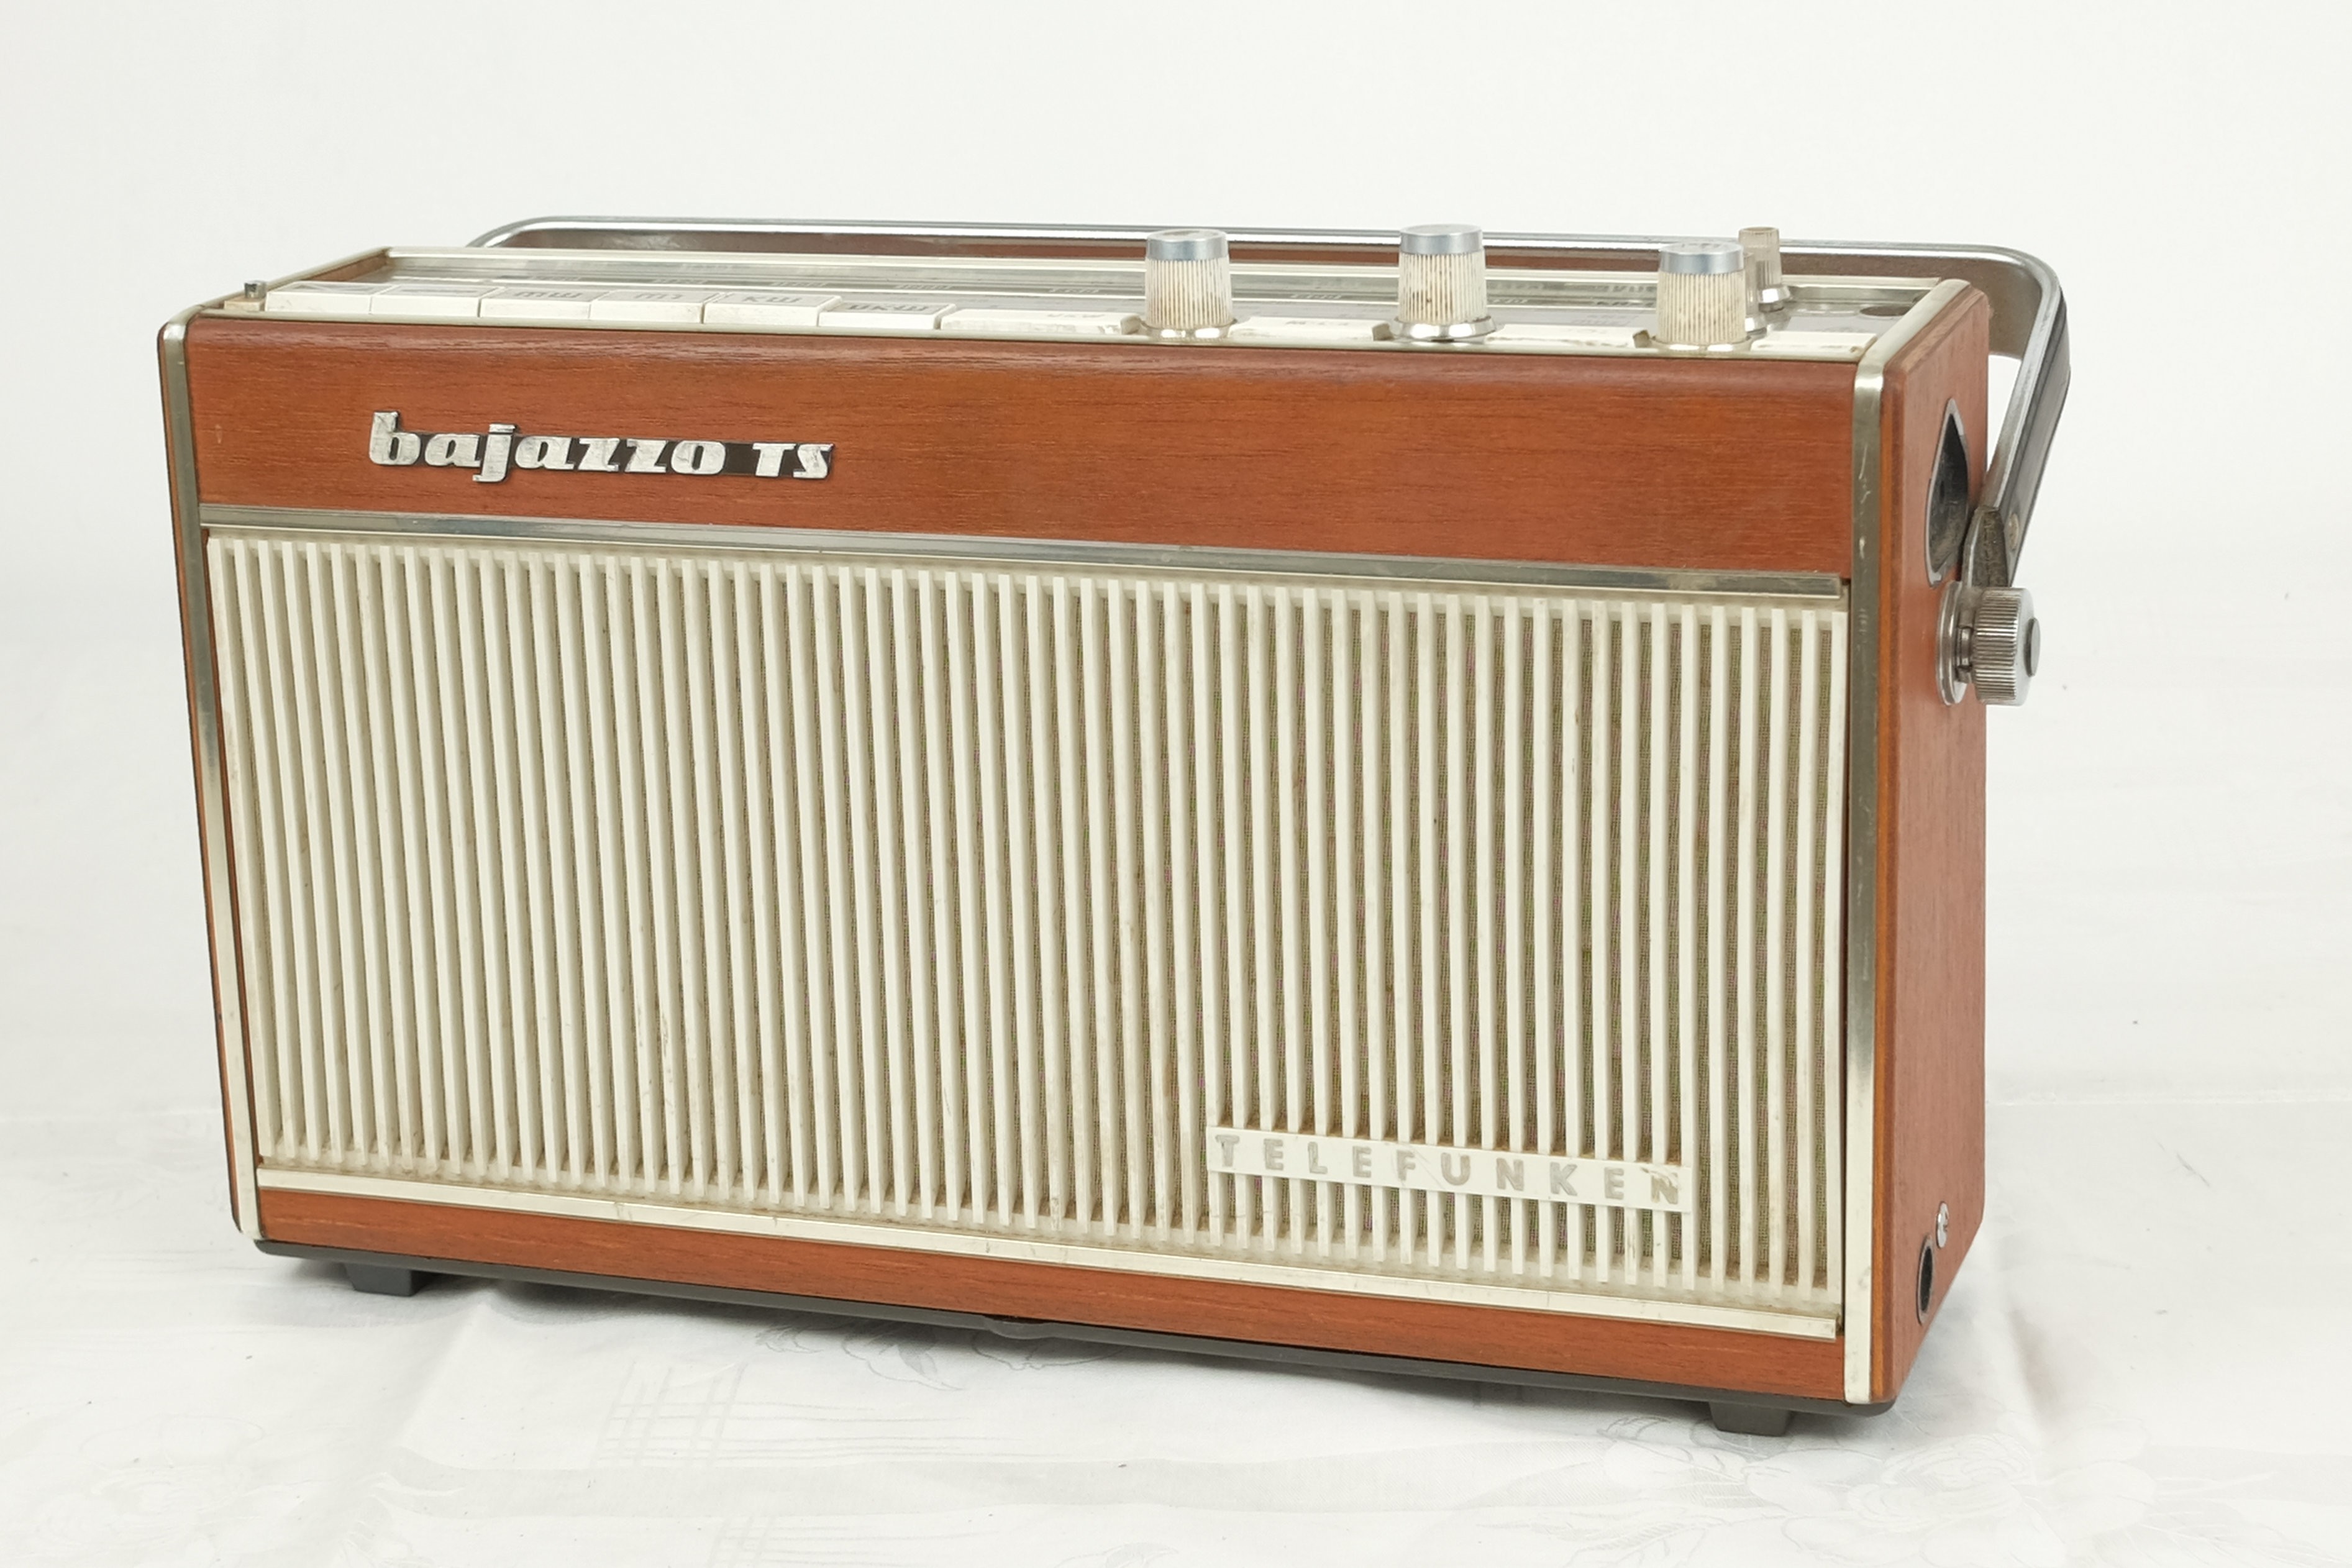 Kofferradio Telefunken  "bajazzo TS" (Volkskunde- und Freilichtmuseum Roscheider Hof CC0)